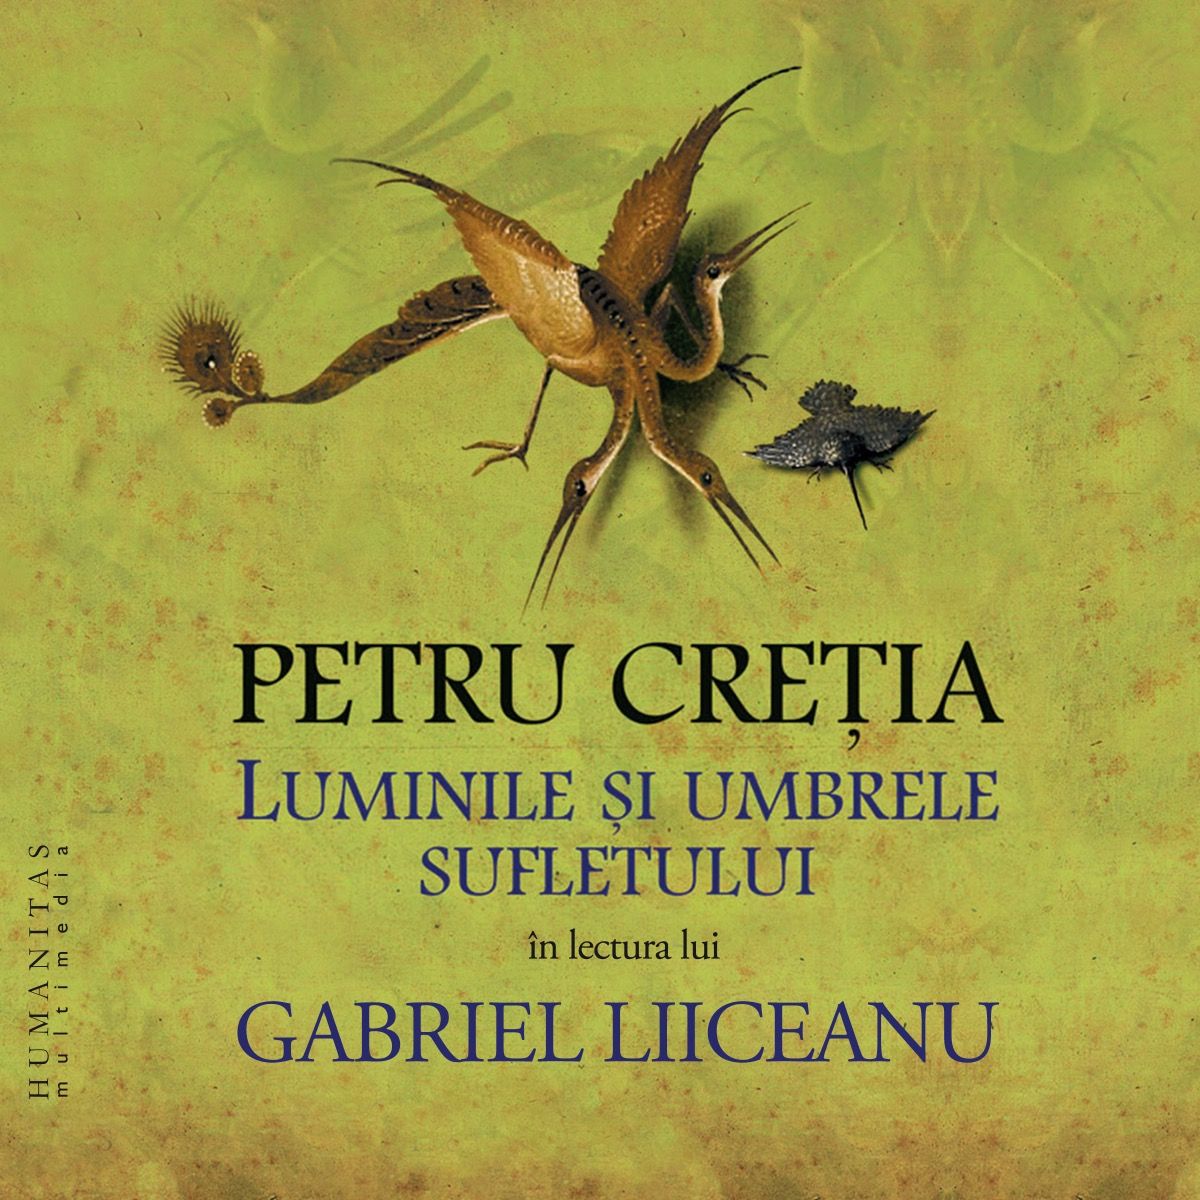 Luminile si umbrele sufletului | Petru Cretia carturesti.ro poza bestsellers.ro